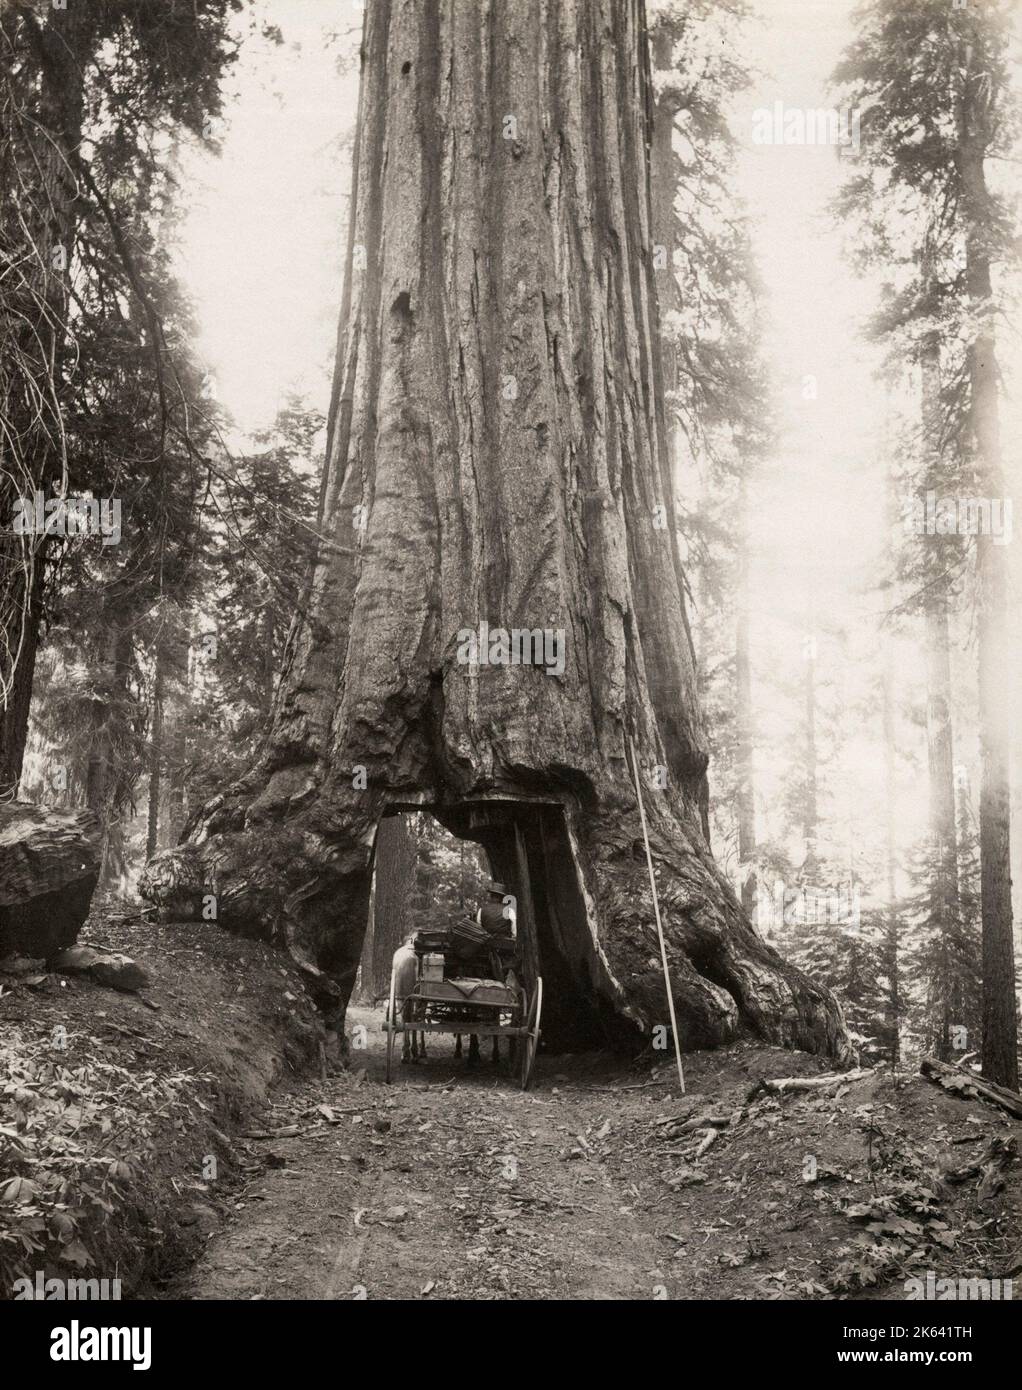 Wawona, gigantesco albero di mare, con carrozza che passa attraverso, Mariposa Grove, California. Vintage 19th ° secolo fotografia. Foto Stock